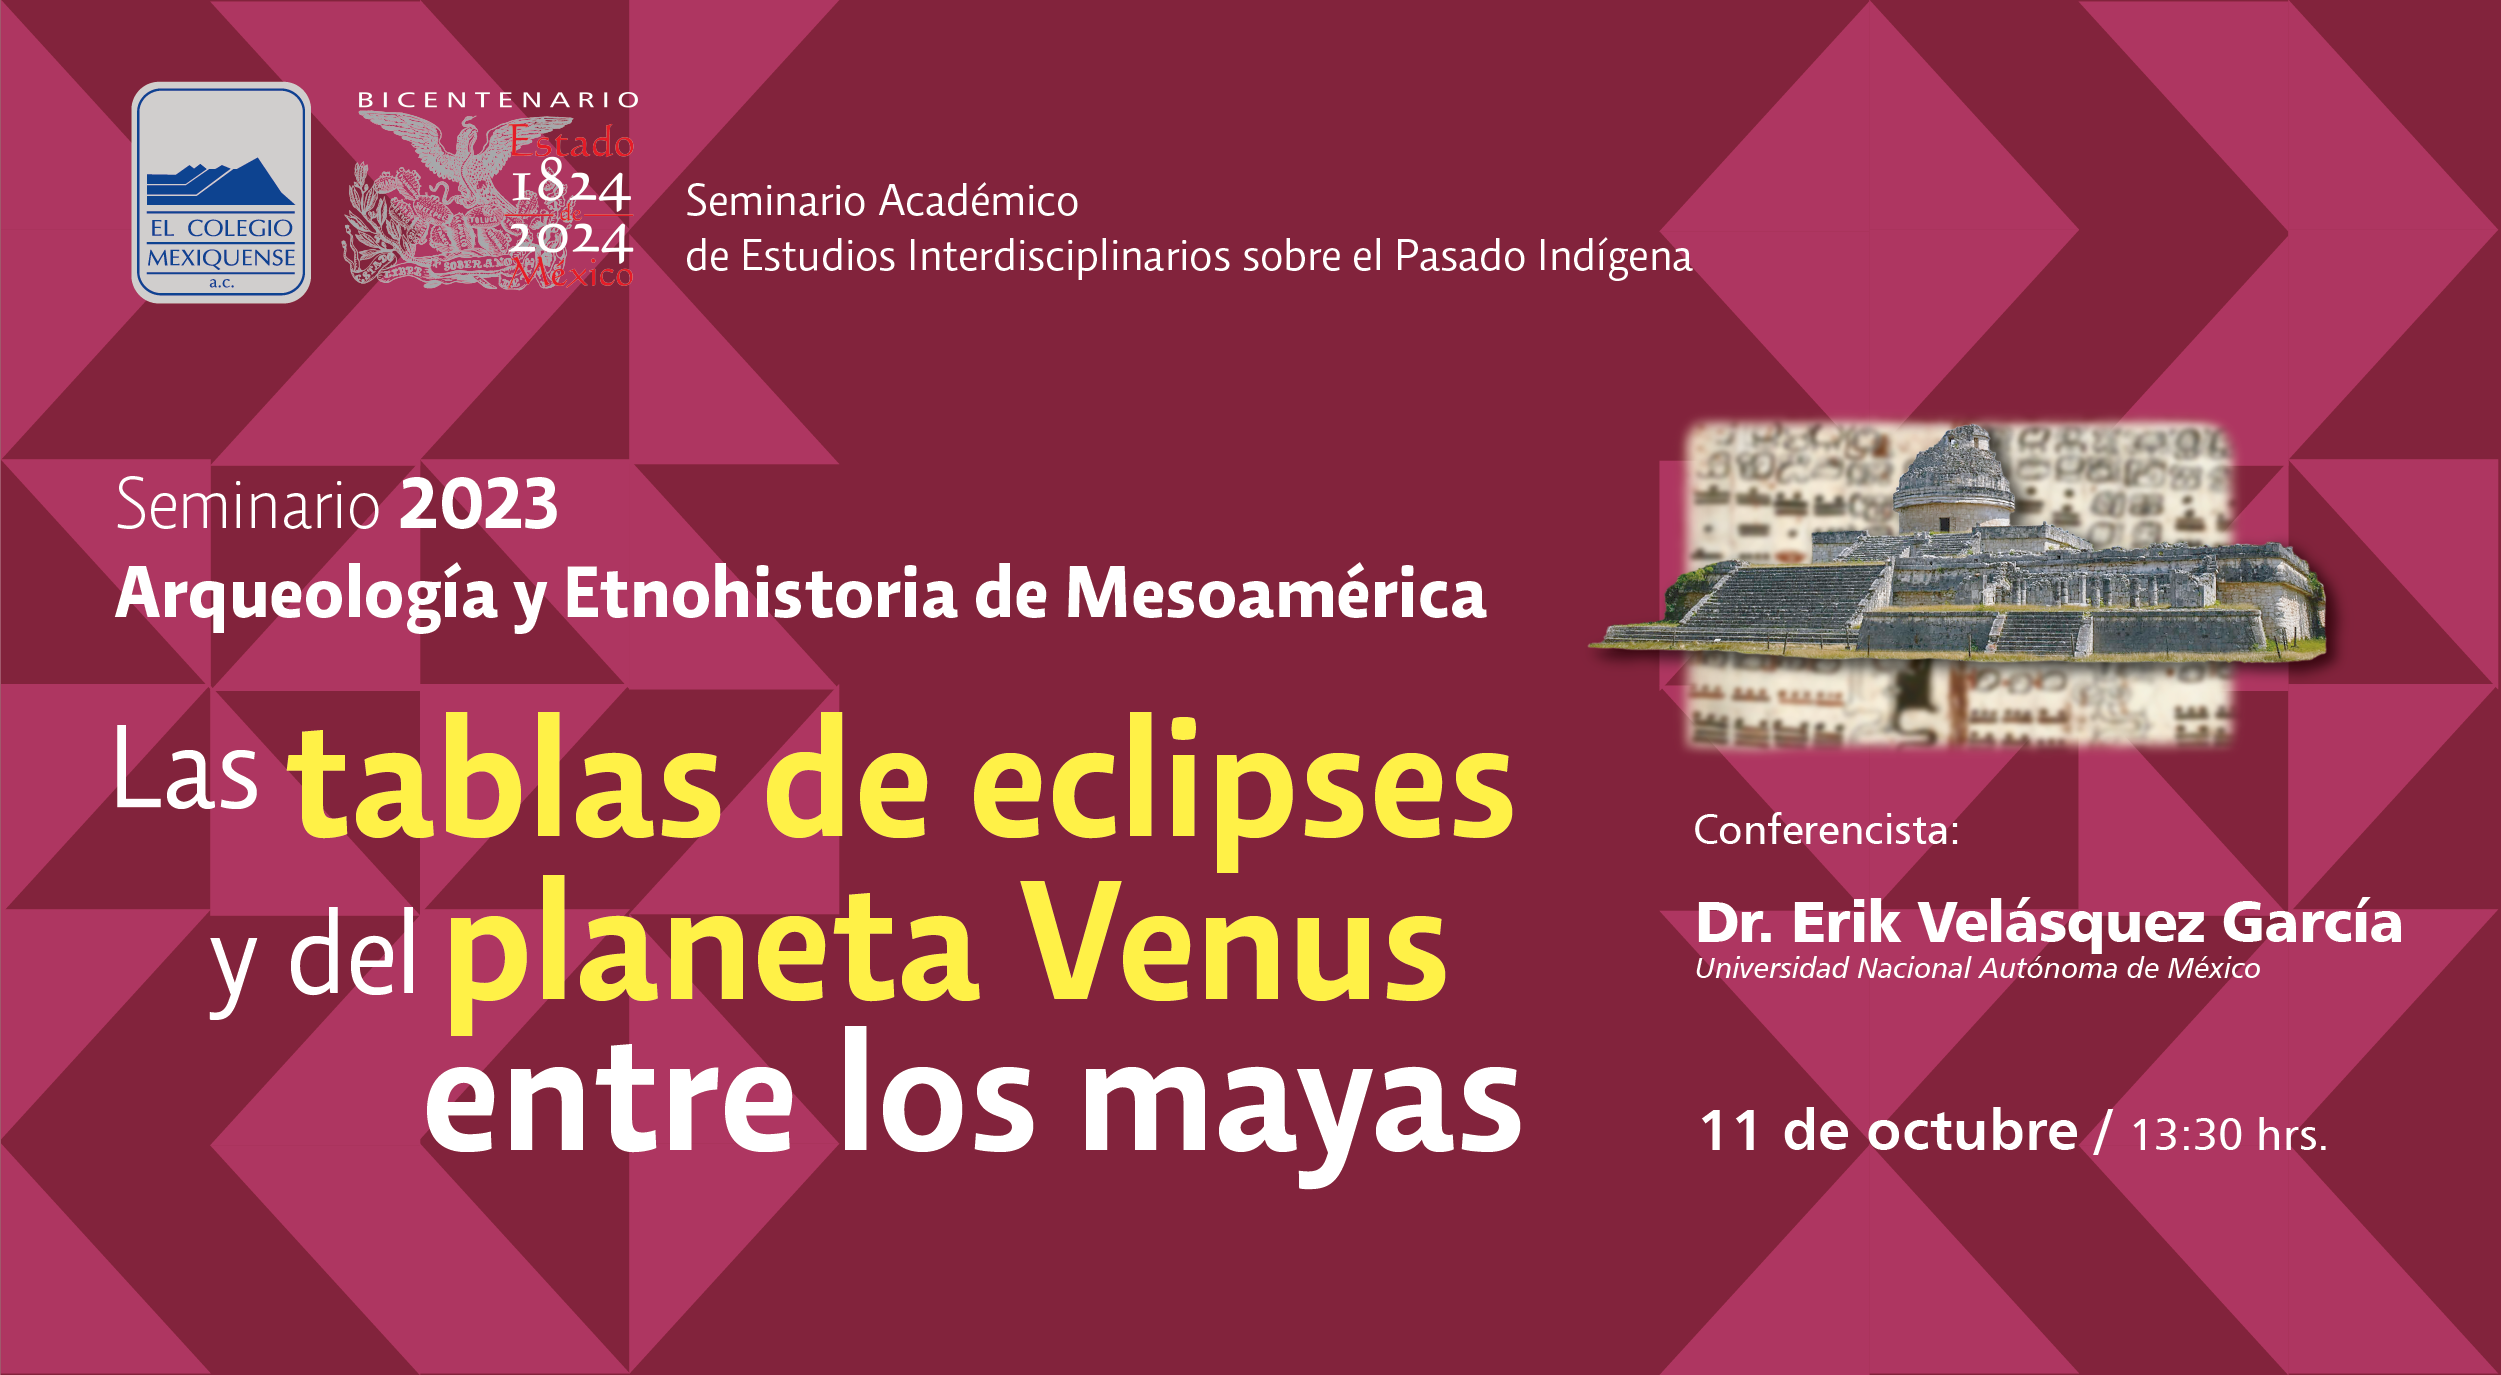 Conferencia: Las tablas de eclipses y del planeta Venus entre los mayas